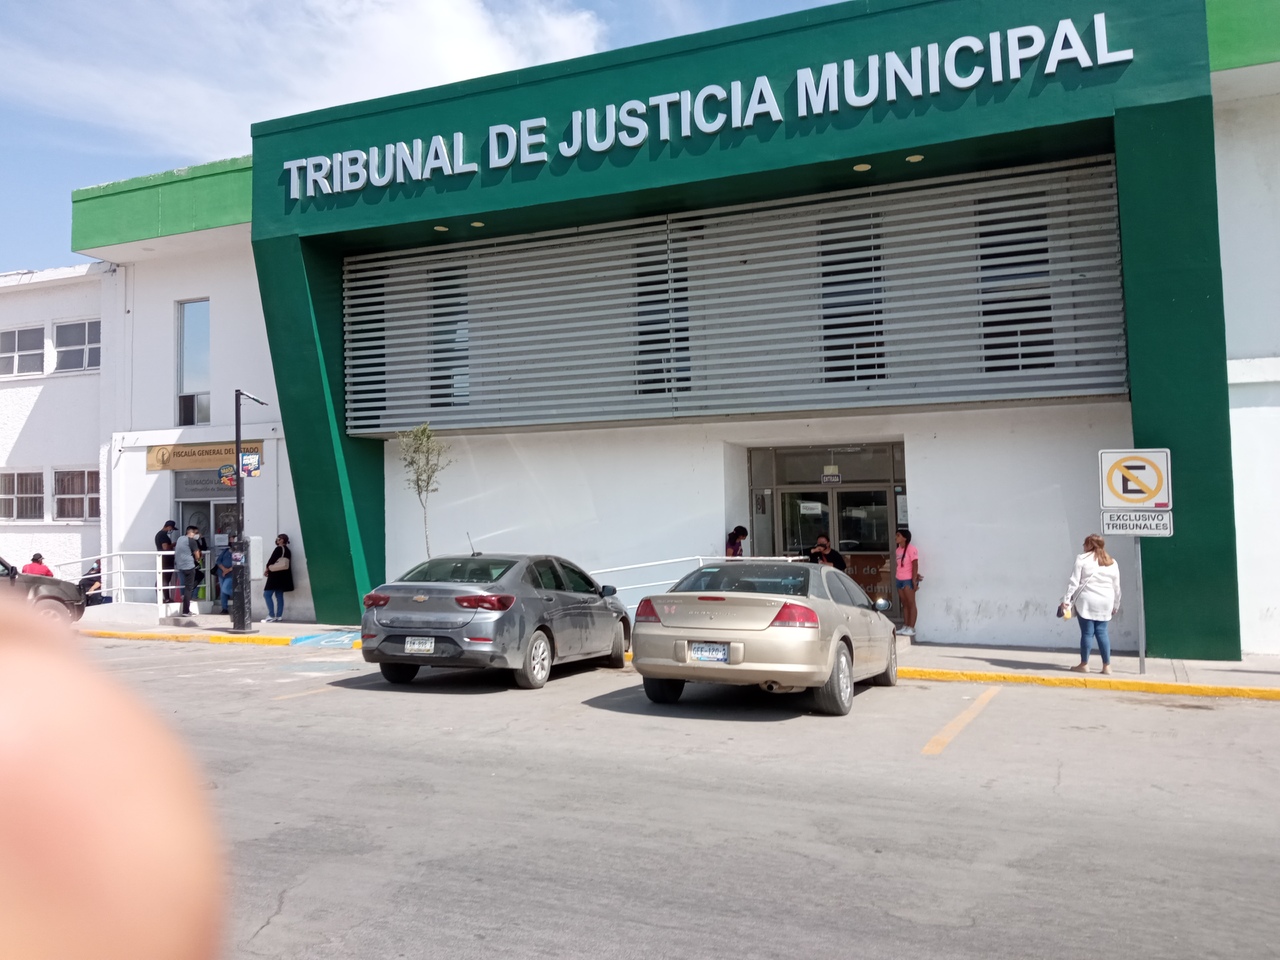 El Tribunal de Justicia Municipal de Torreón recibió la última visita por parte de la Agencia de los Estados Unidos para el Desarrollo Internacional.